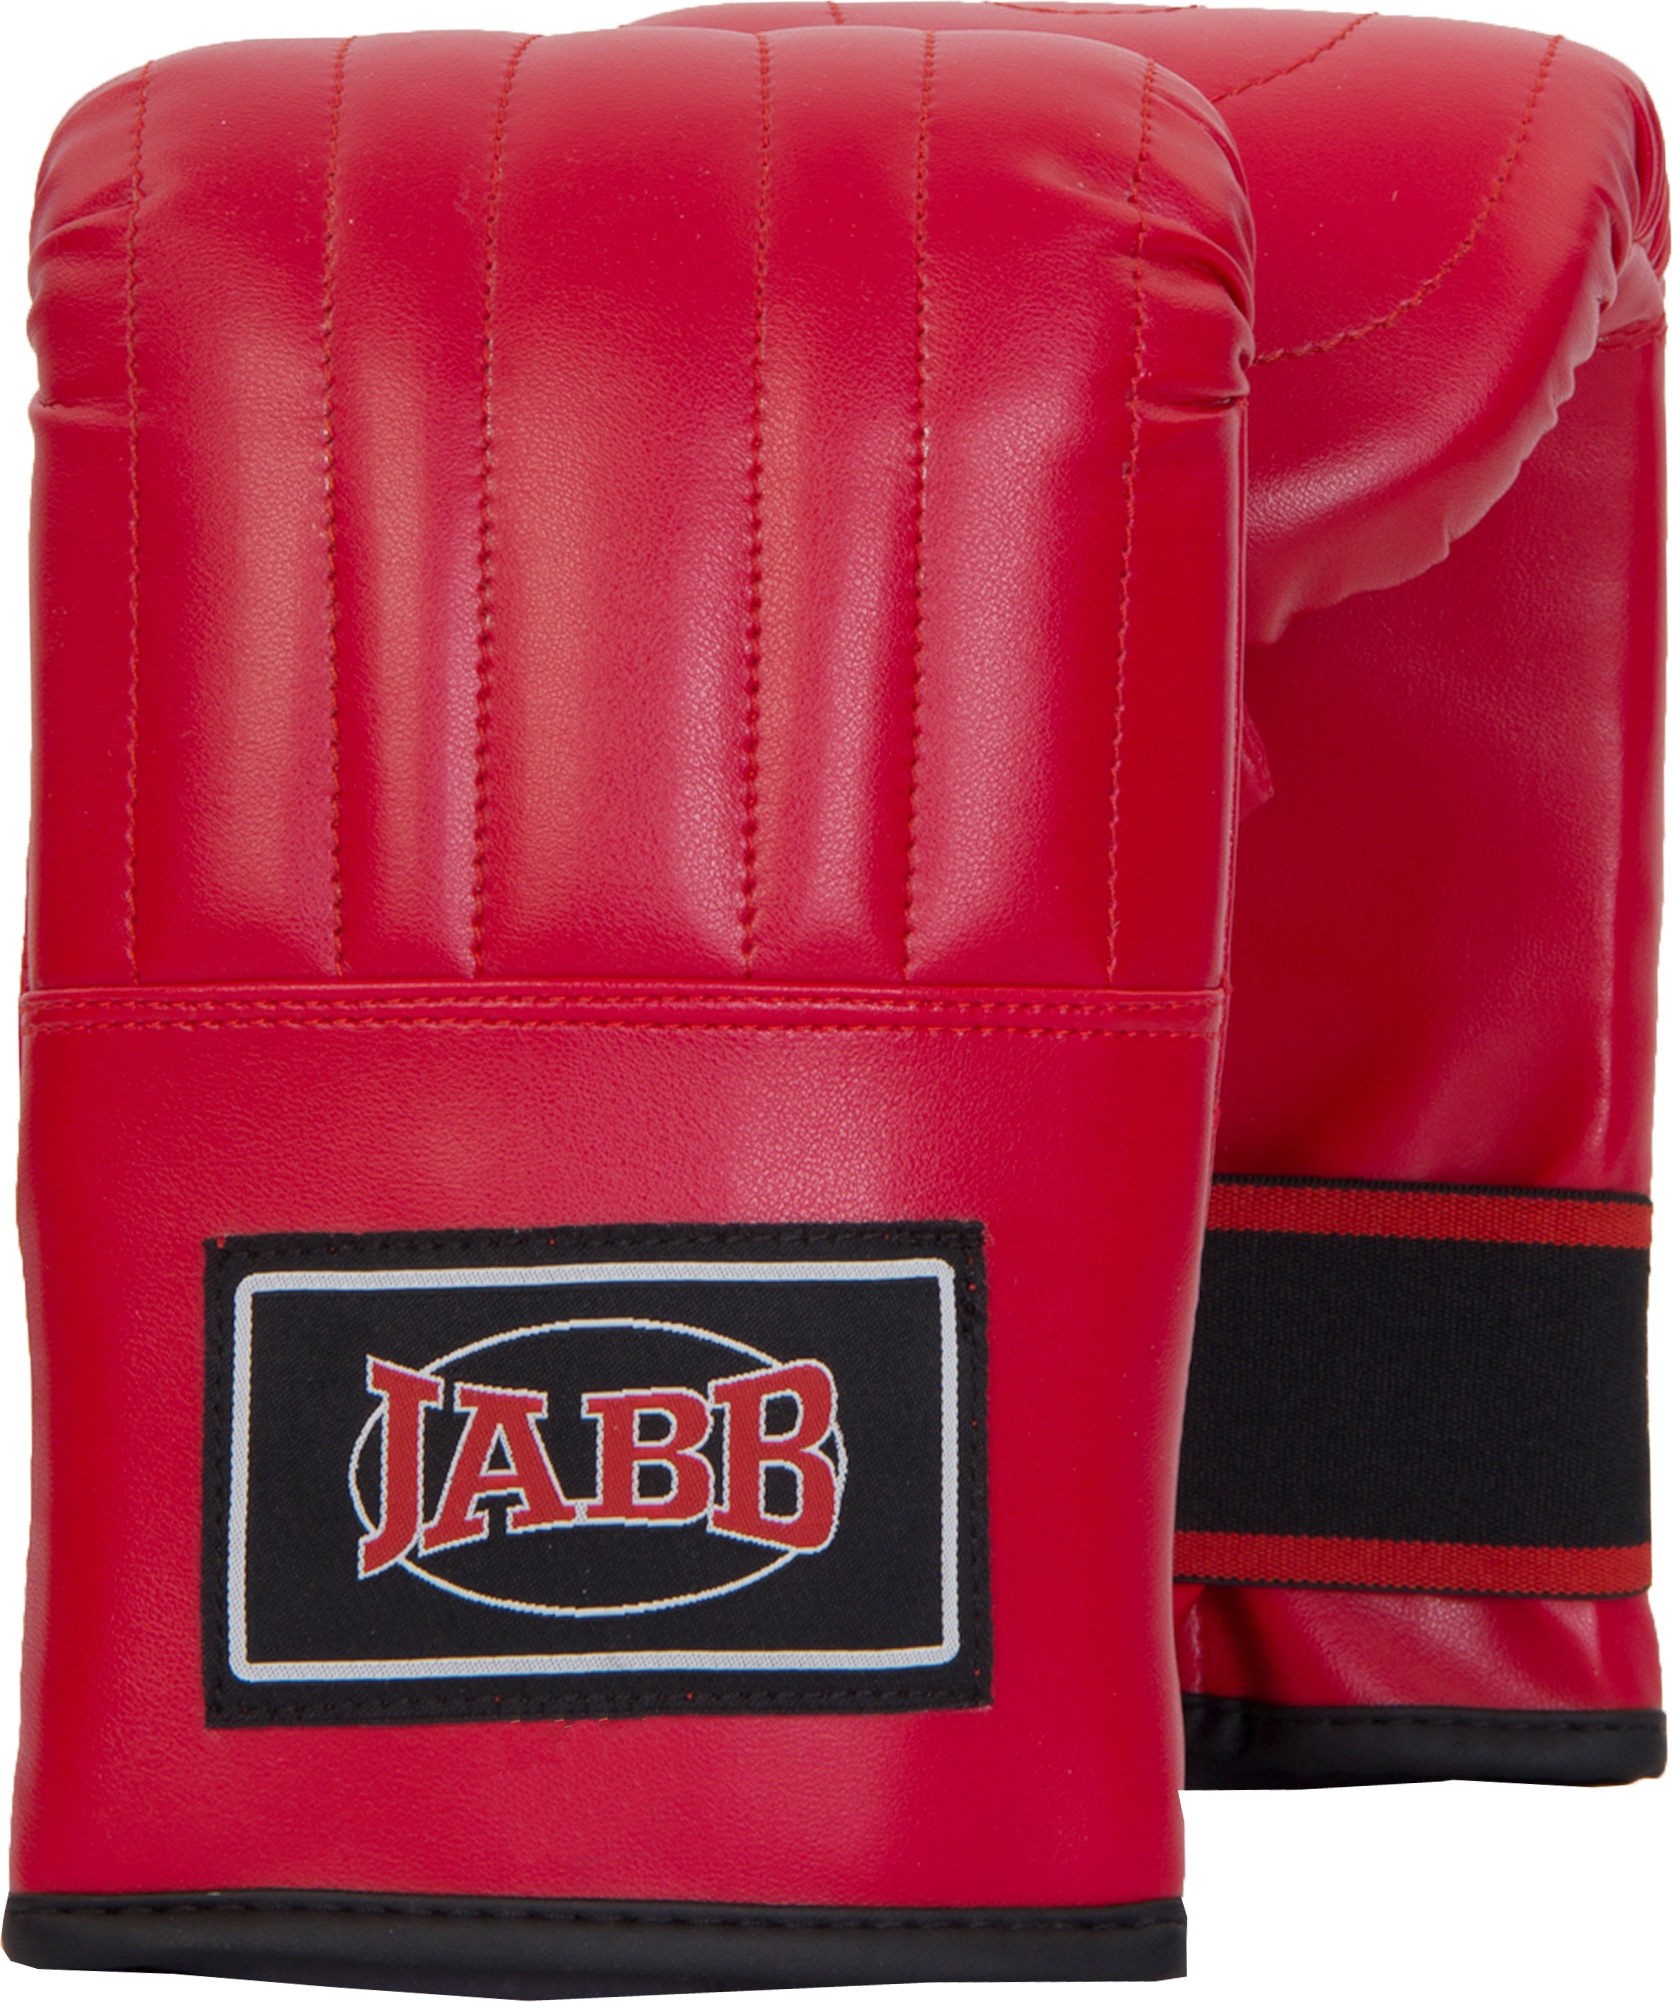 Снарядные перчатки Jabb JE-2075, красный, S